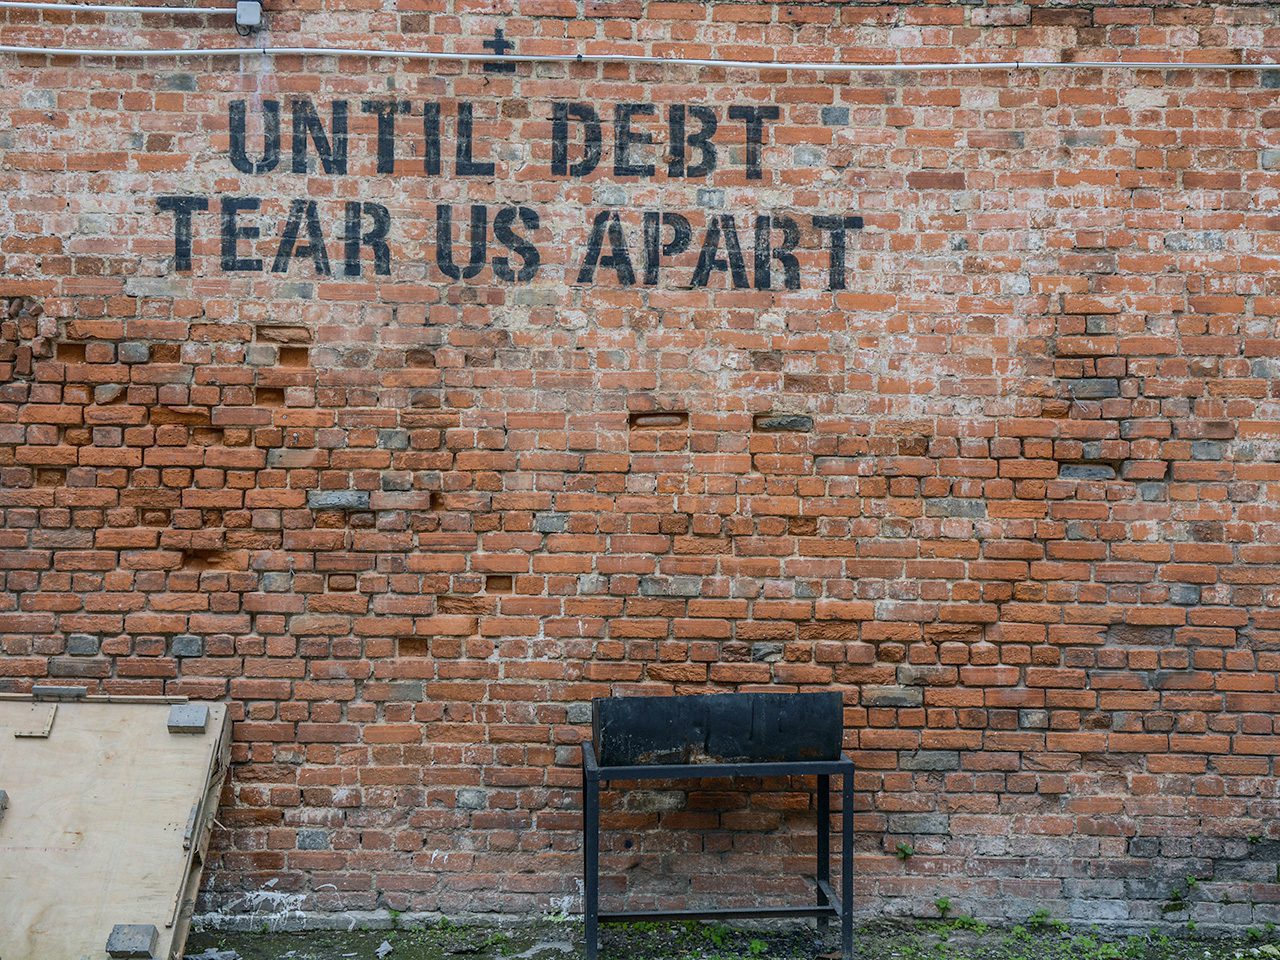 Until debt tear us apart sign